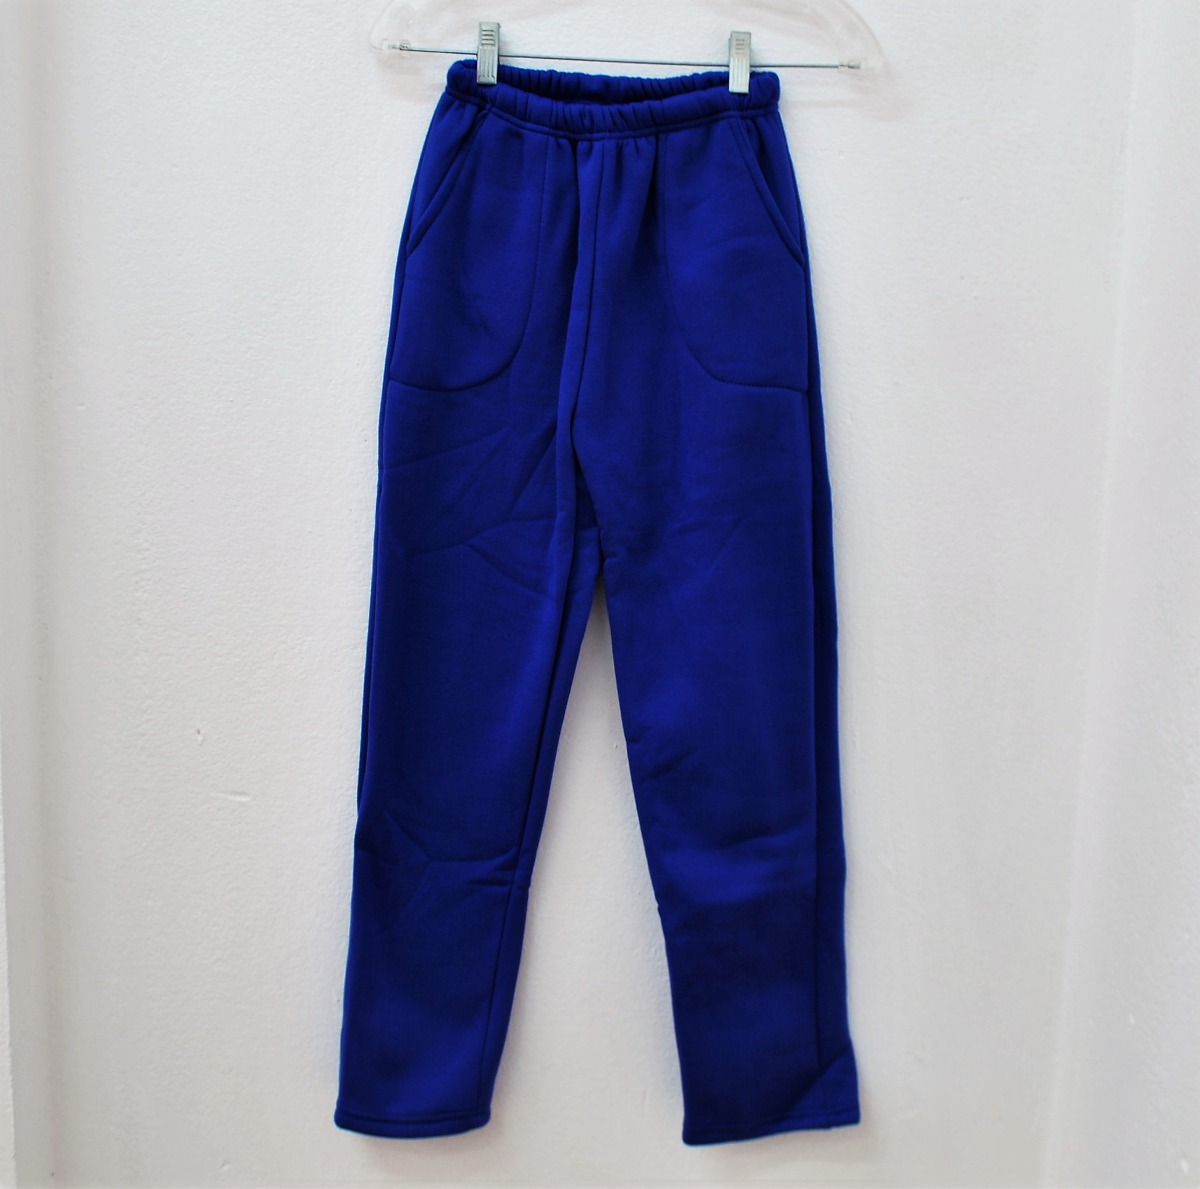 Pantalón Deportivo Para Niña Azul Francia - Todo Útil - $ 299,00 en